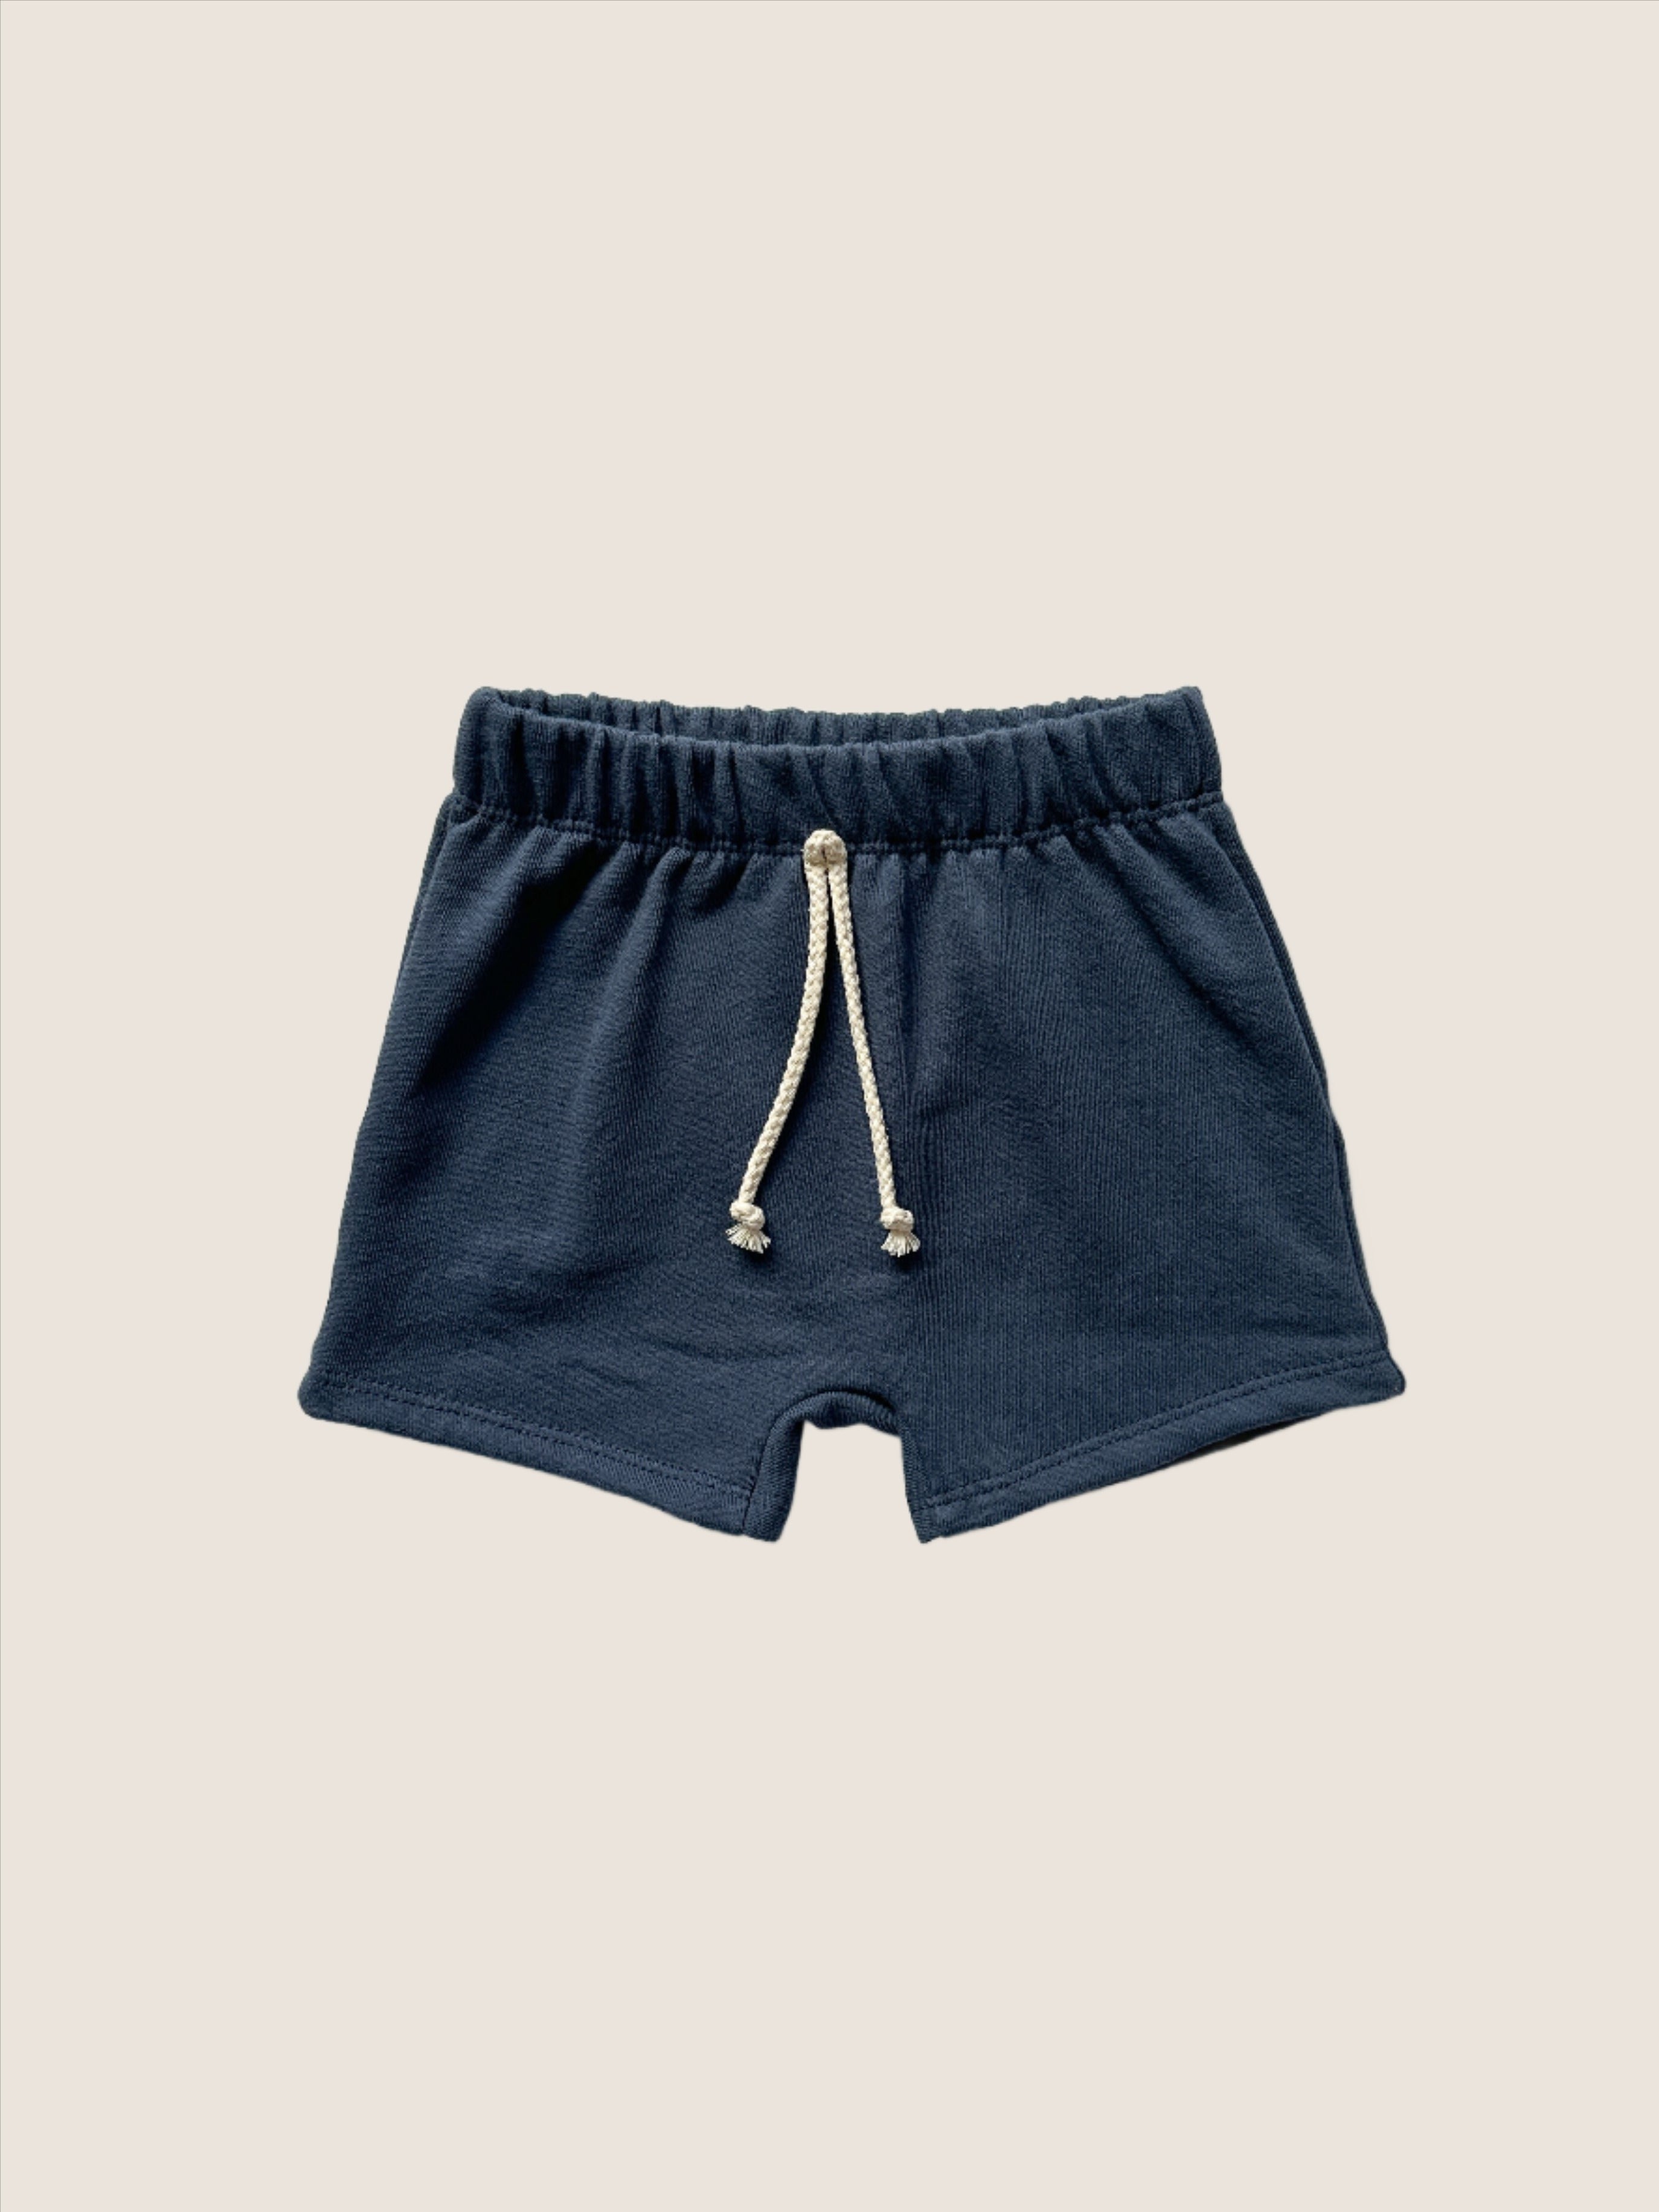 Boy shorts - navy